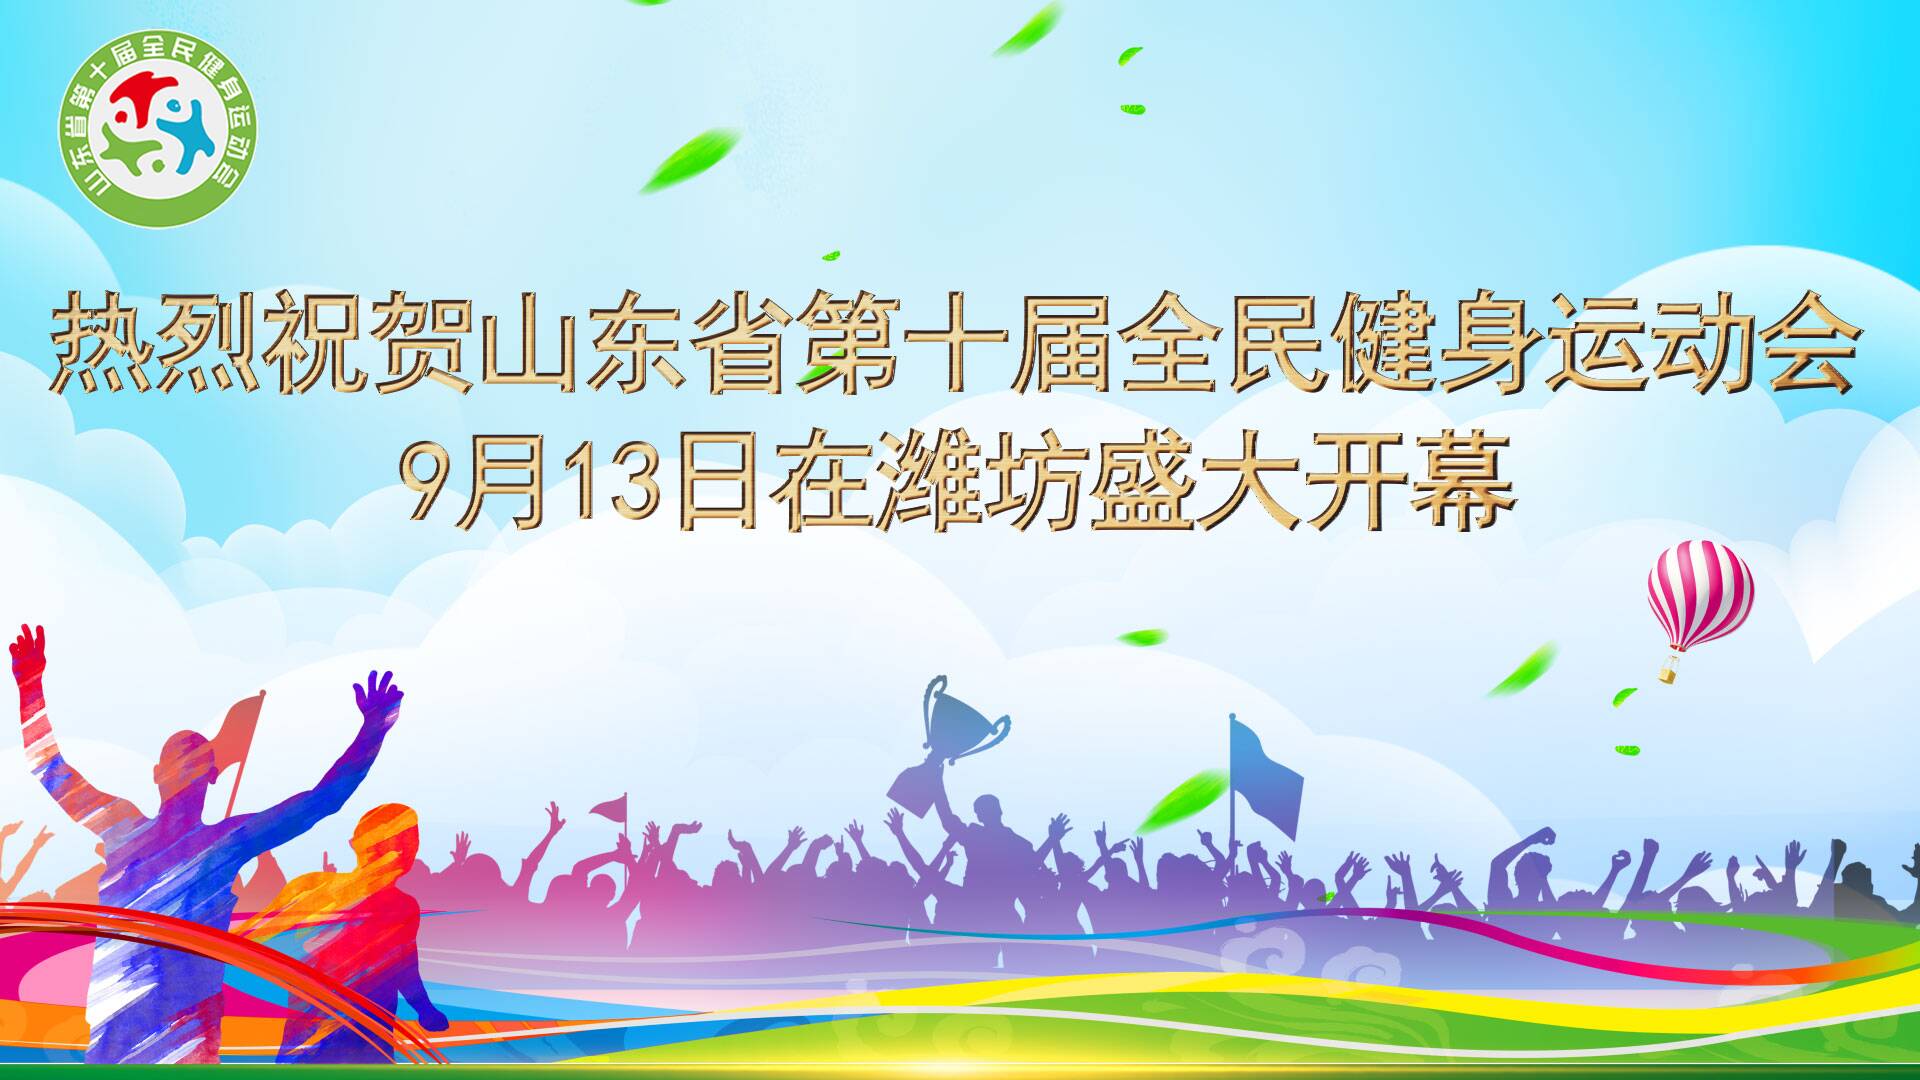 体育的盛会全民的节日  山东省第十届全民健身运动会在潍坊举行